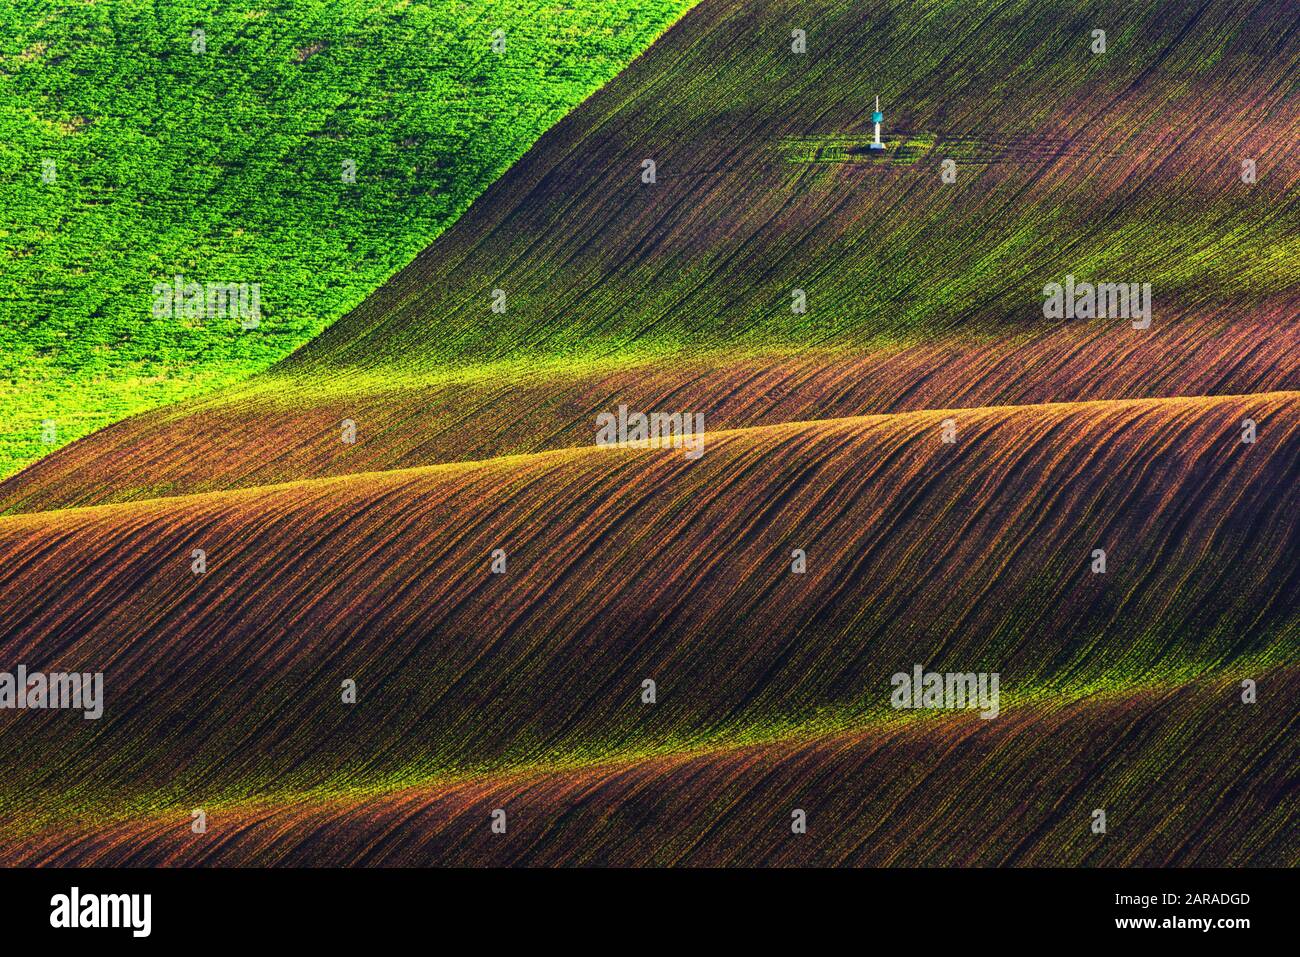 Paysage rural de printemps avec des collines colorées à rayures. Vagues vertes et brunes des champs agricoles de la Moravie du Sud, République tchèque. Peut être utilisé comme fond de nature ou texture Banque D'Images